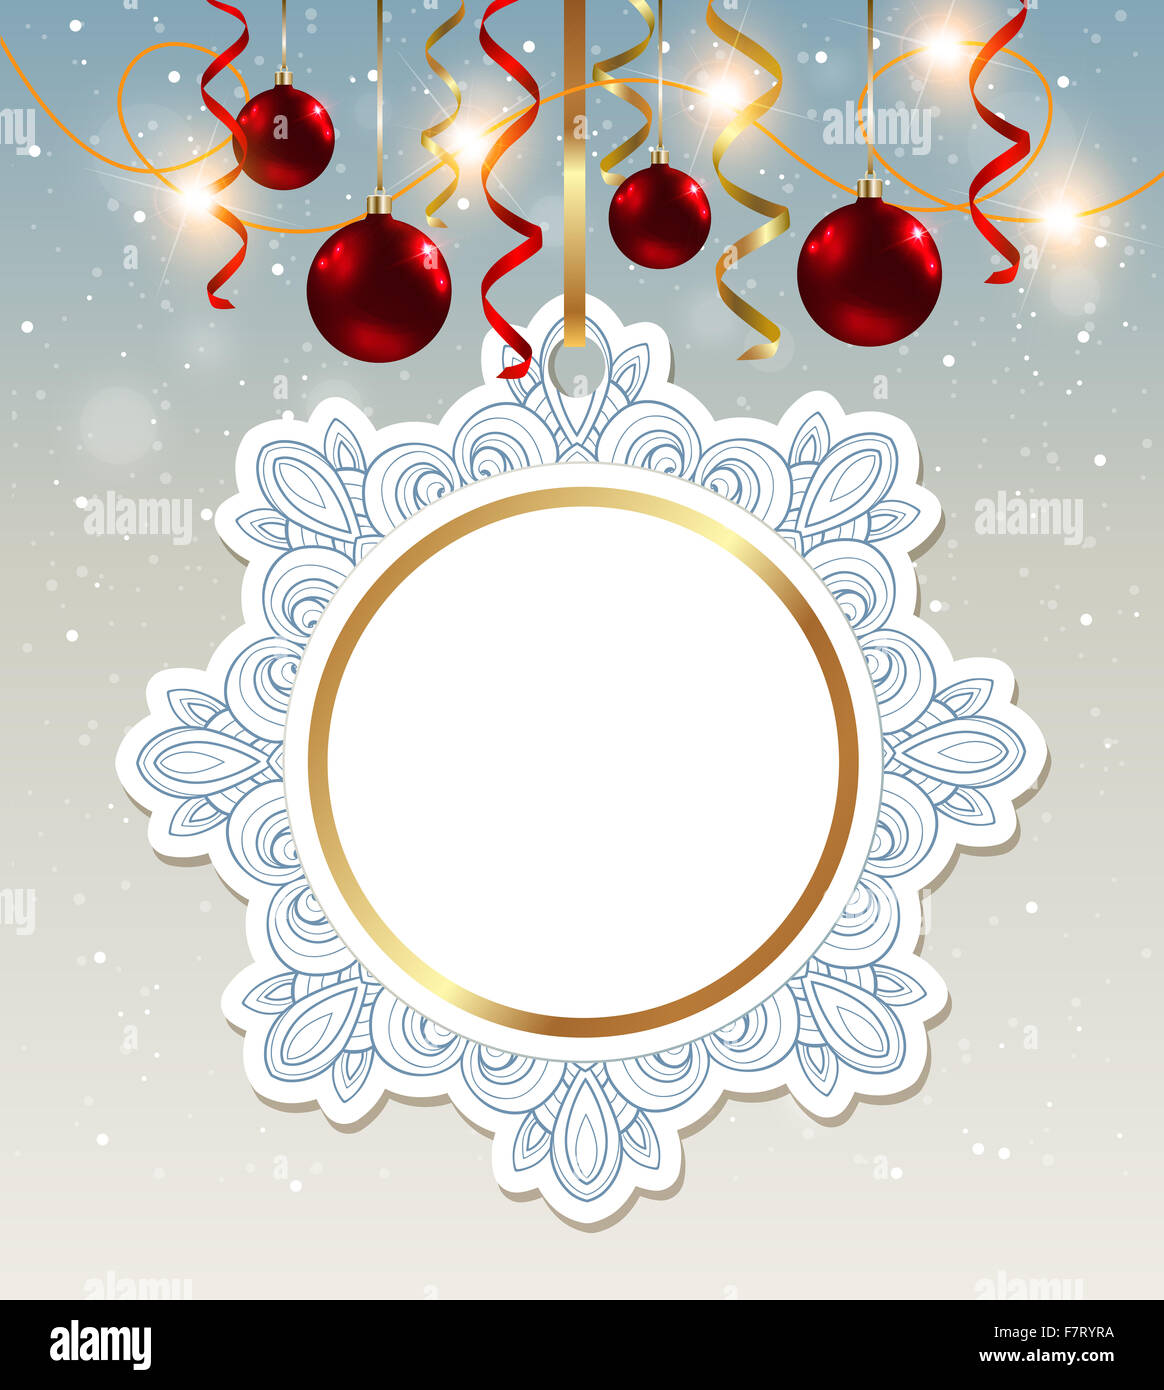 Natale decorativi banner con shining garland e baubles rosso Foto Stock